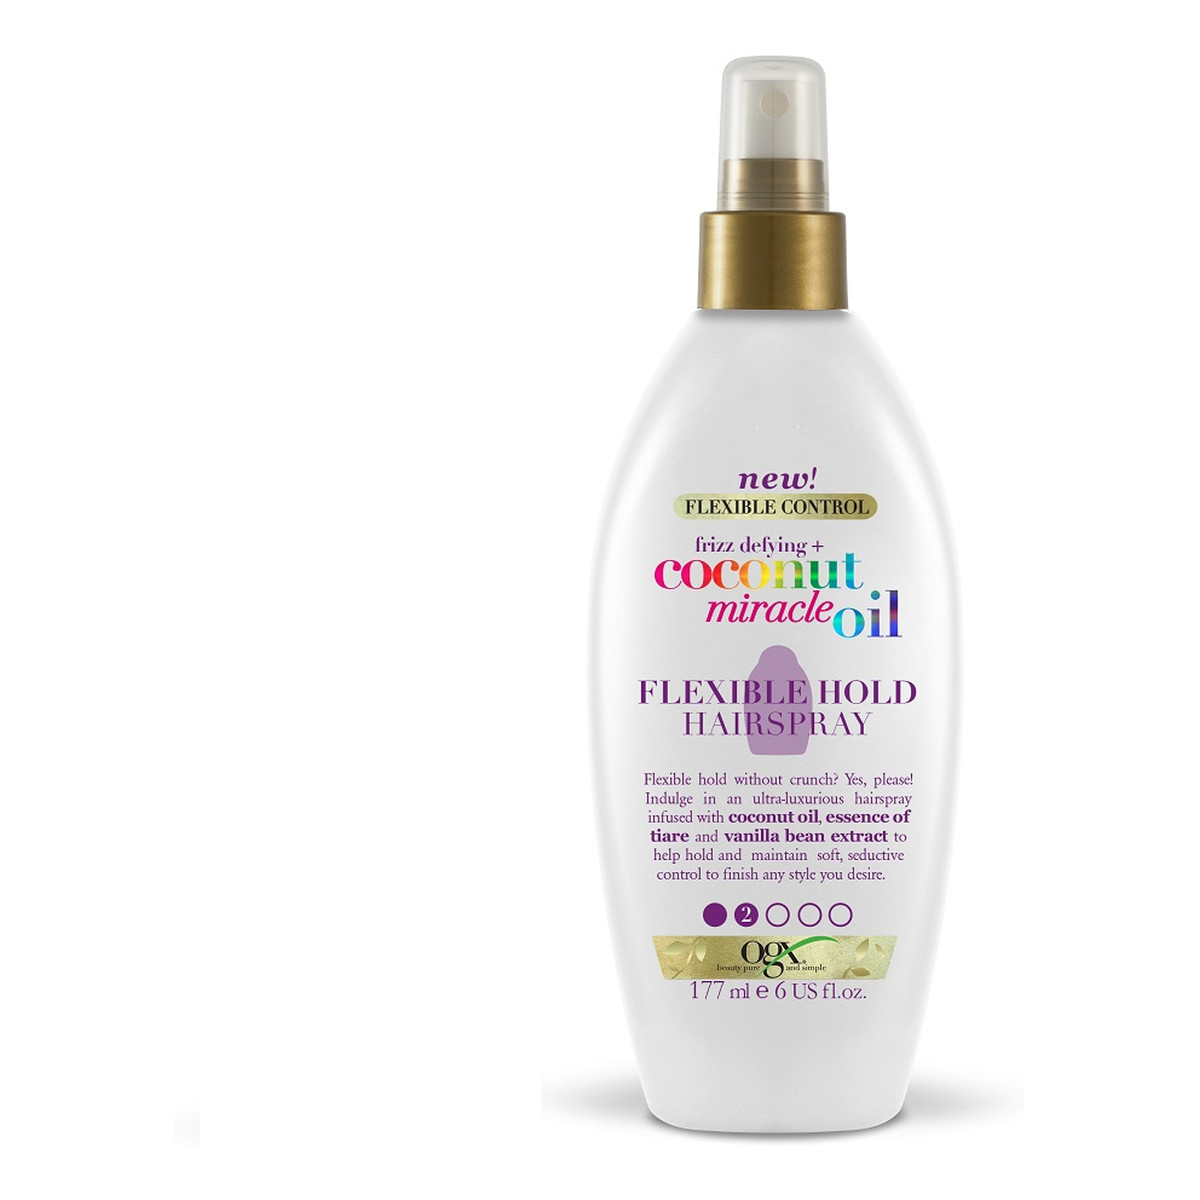 Organix Frizz-defying + coconut miracle oil flexible hold hairspray lakier do włosów nadający połysk